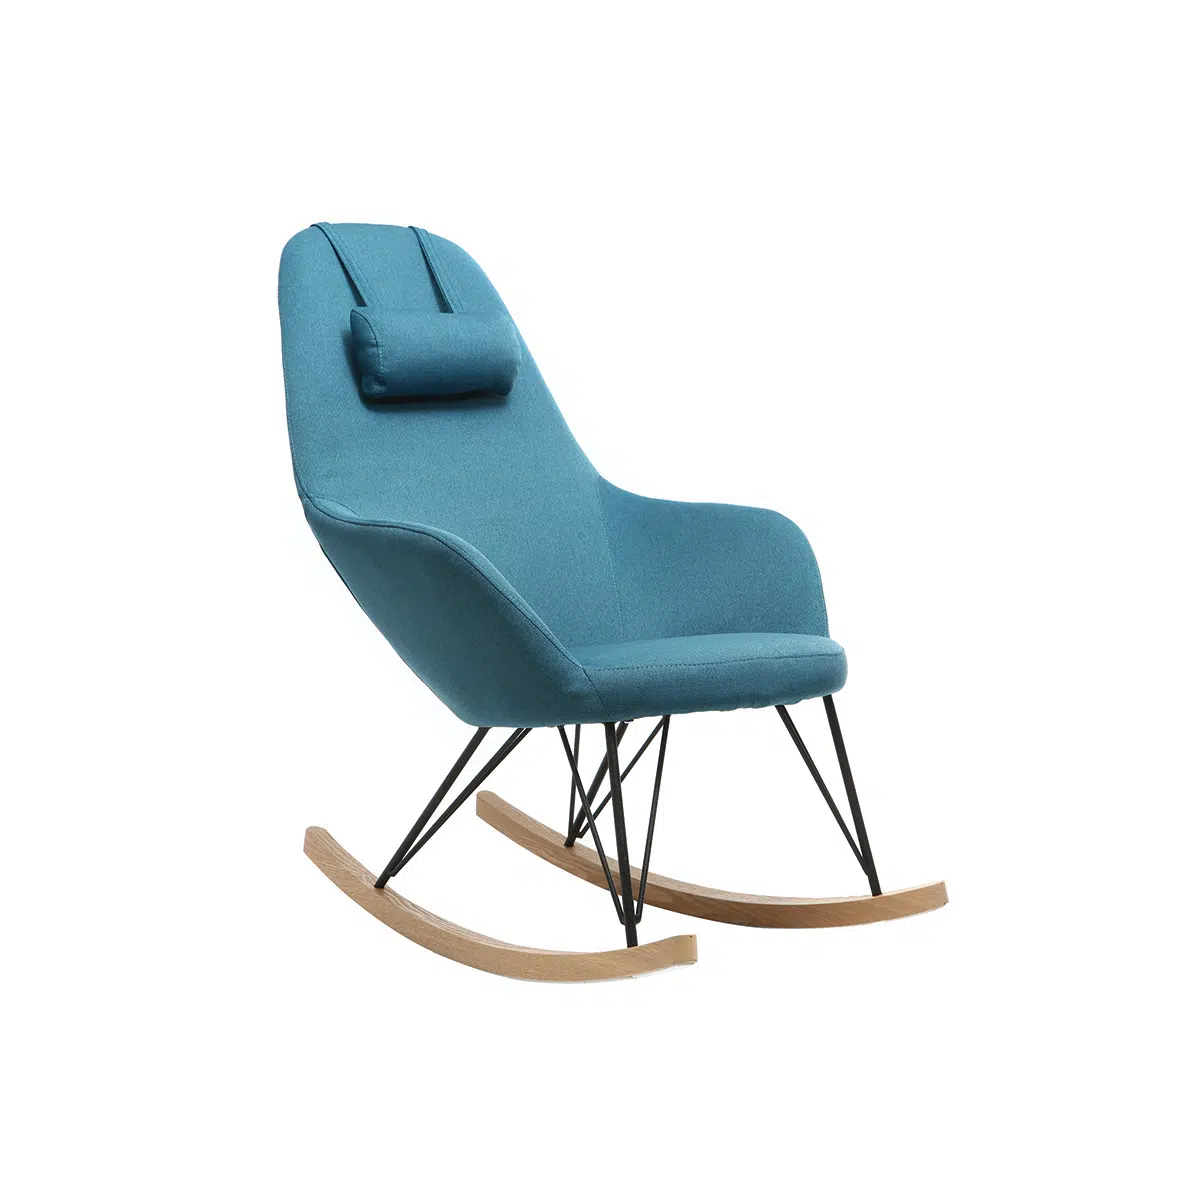 Rocking chair scandinave en tissu bleu canard